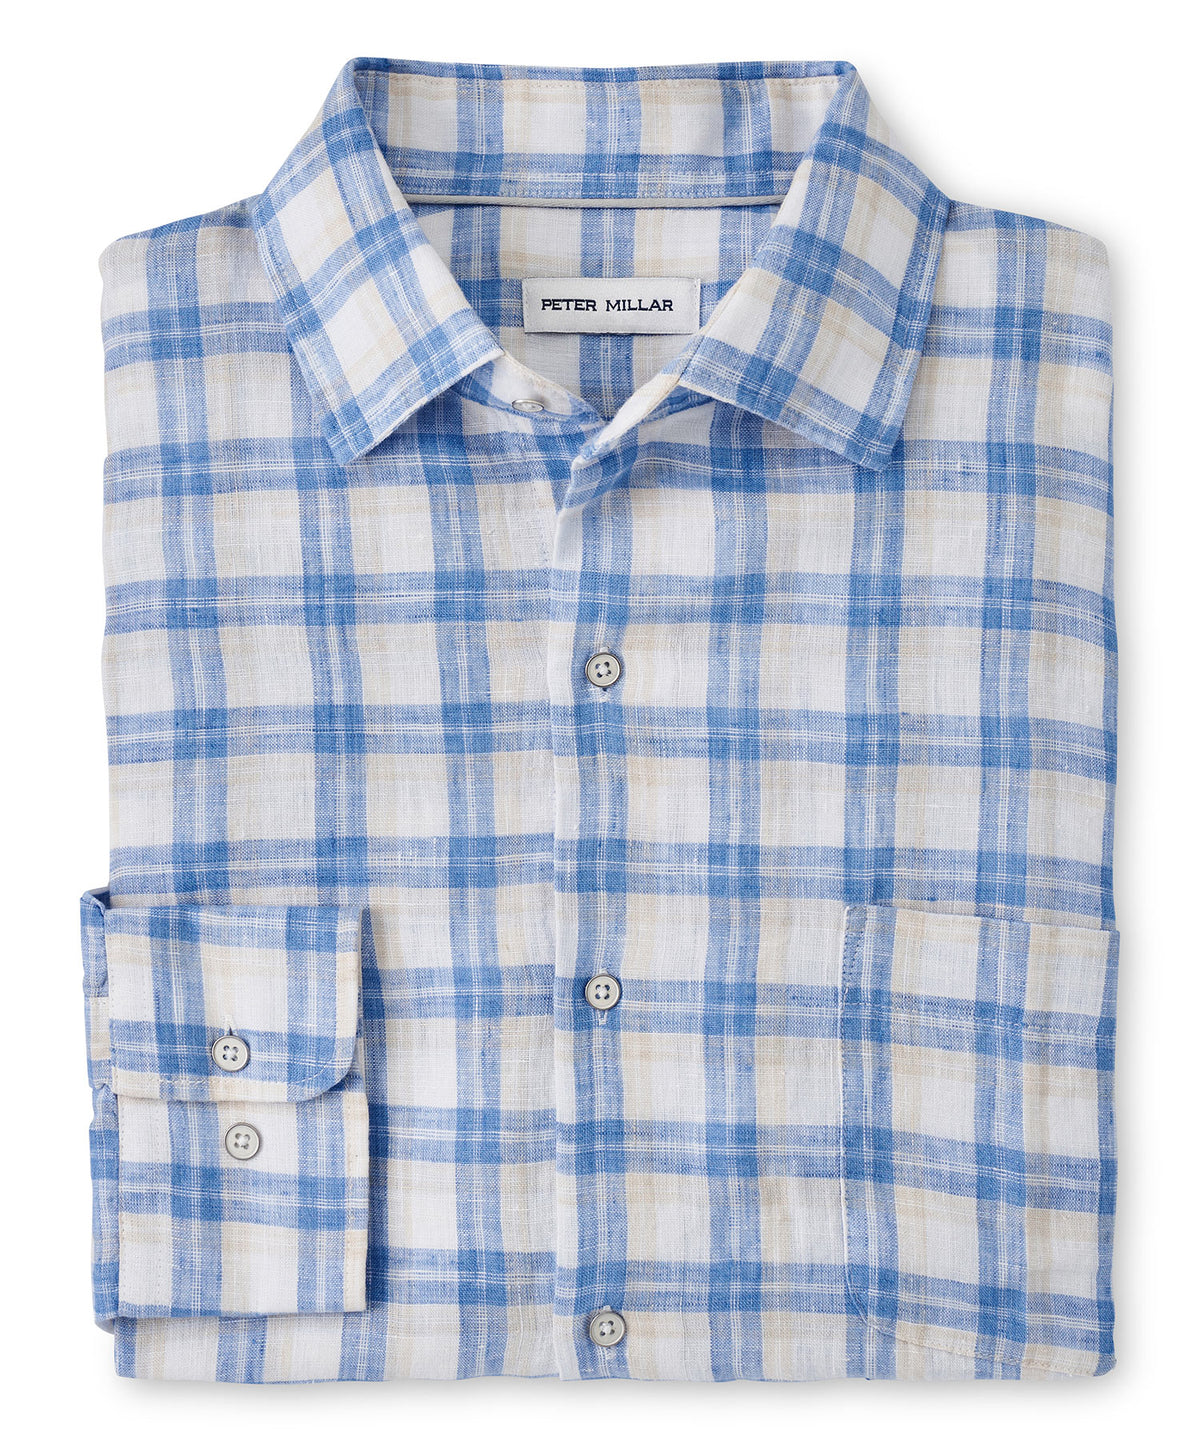 Peter Millar Long Sleeve 'Edisto' Linen Sport Shirt, Big & Tall